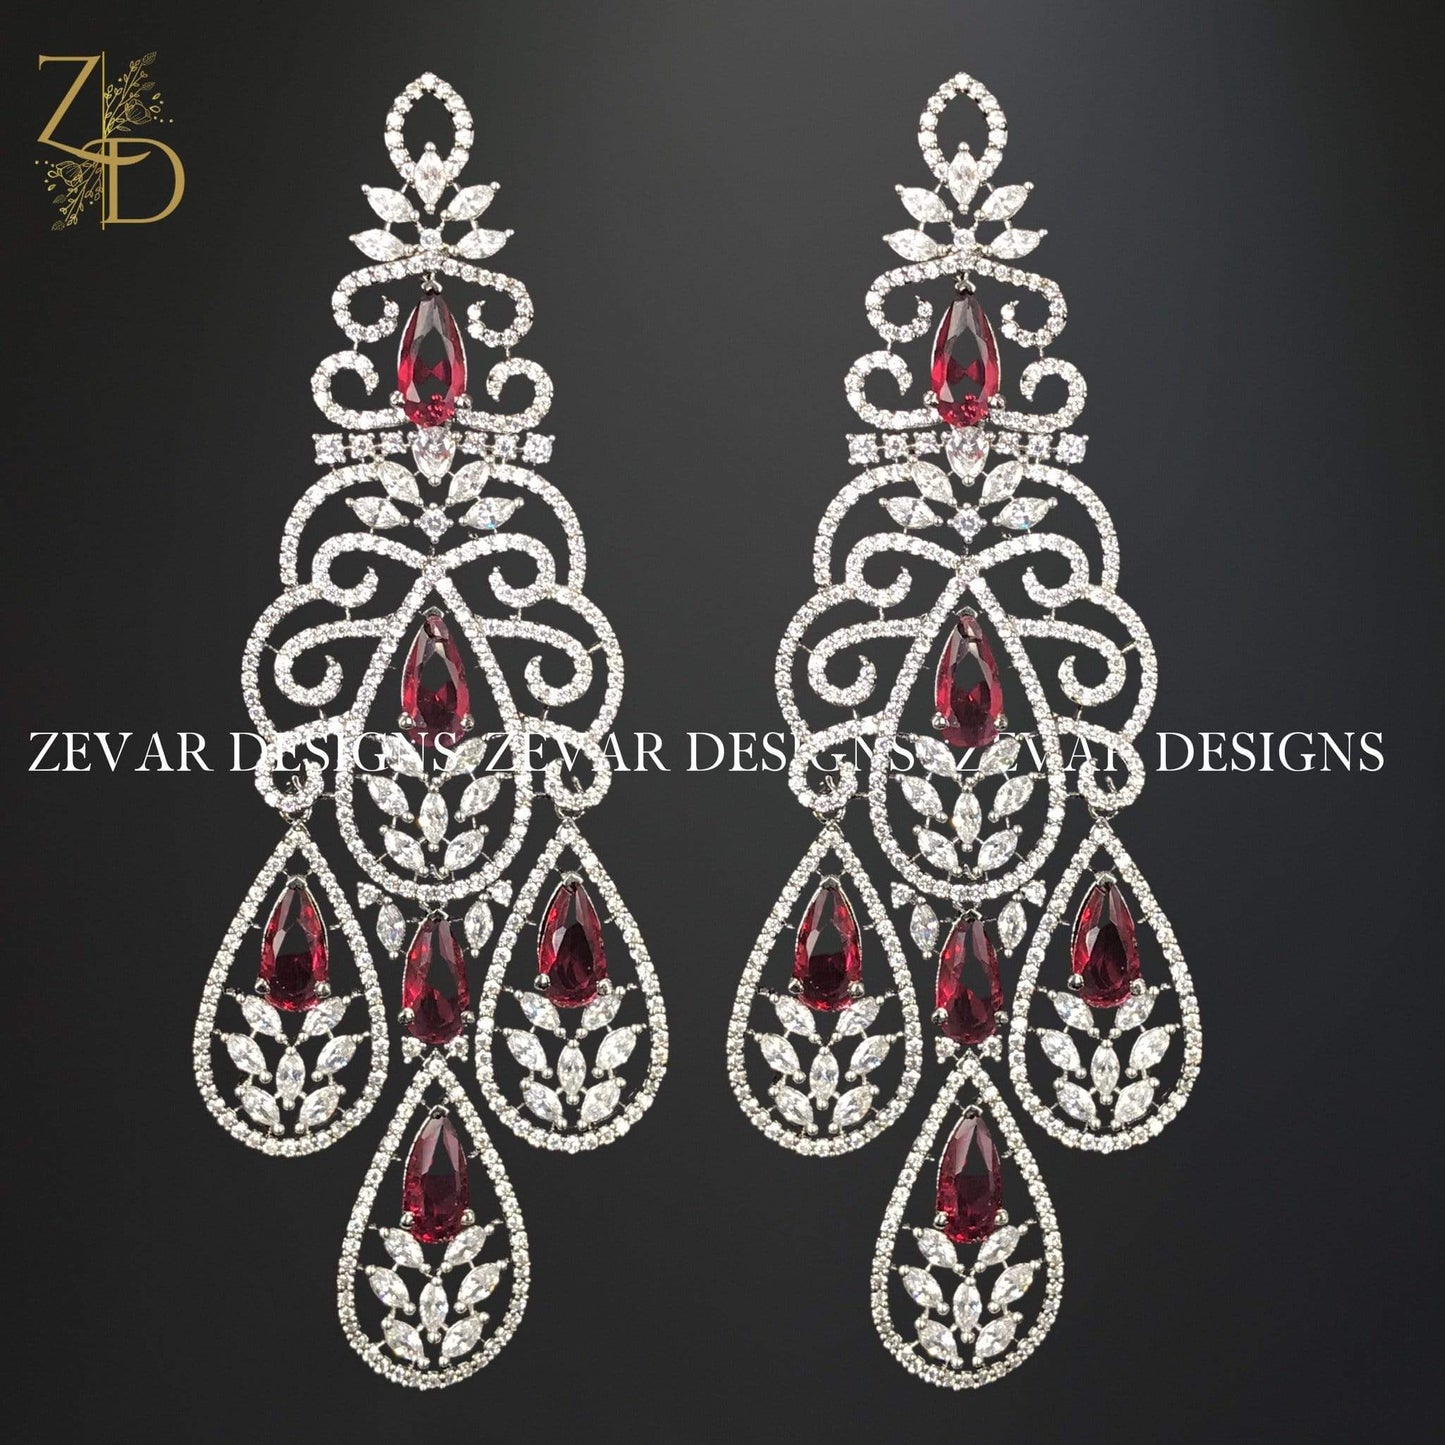 Zevar Designs Zirconia Earrings in Ruby Red and Black Rhodium